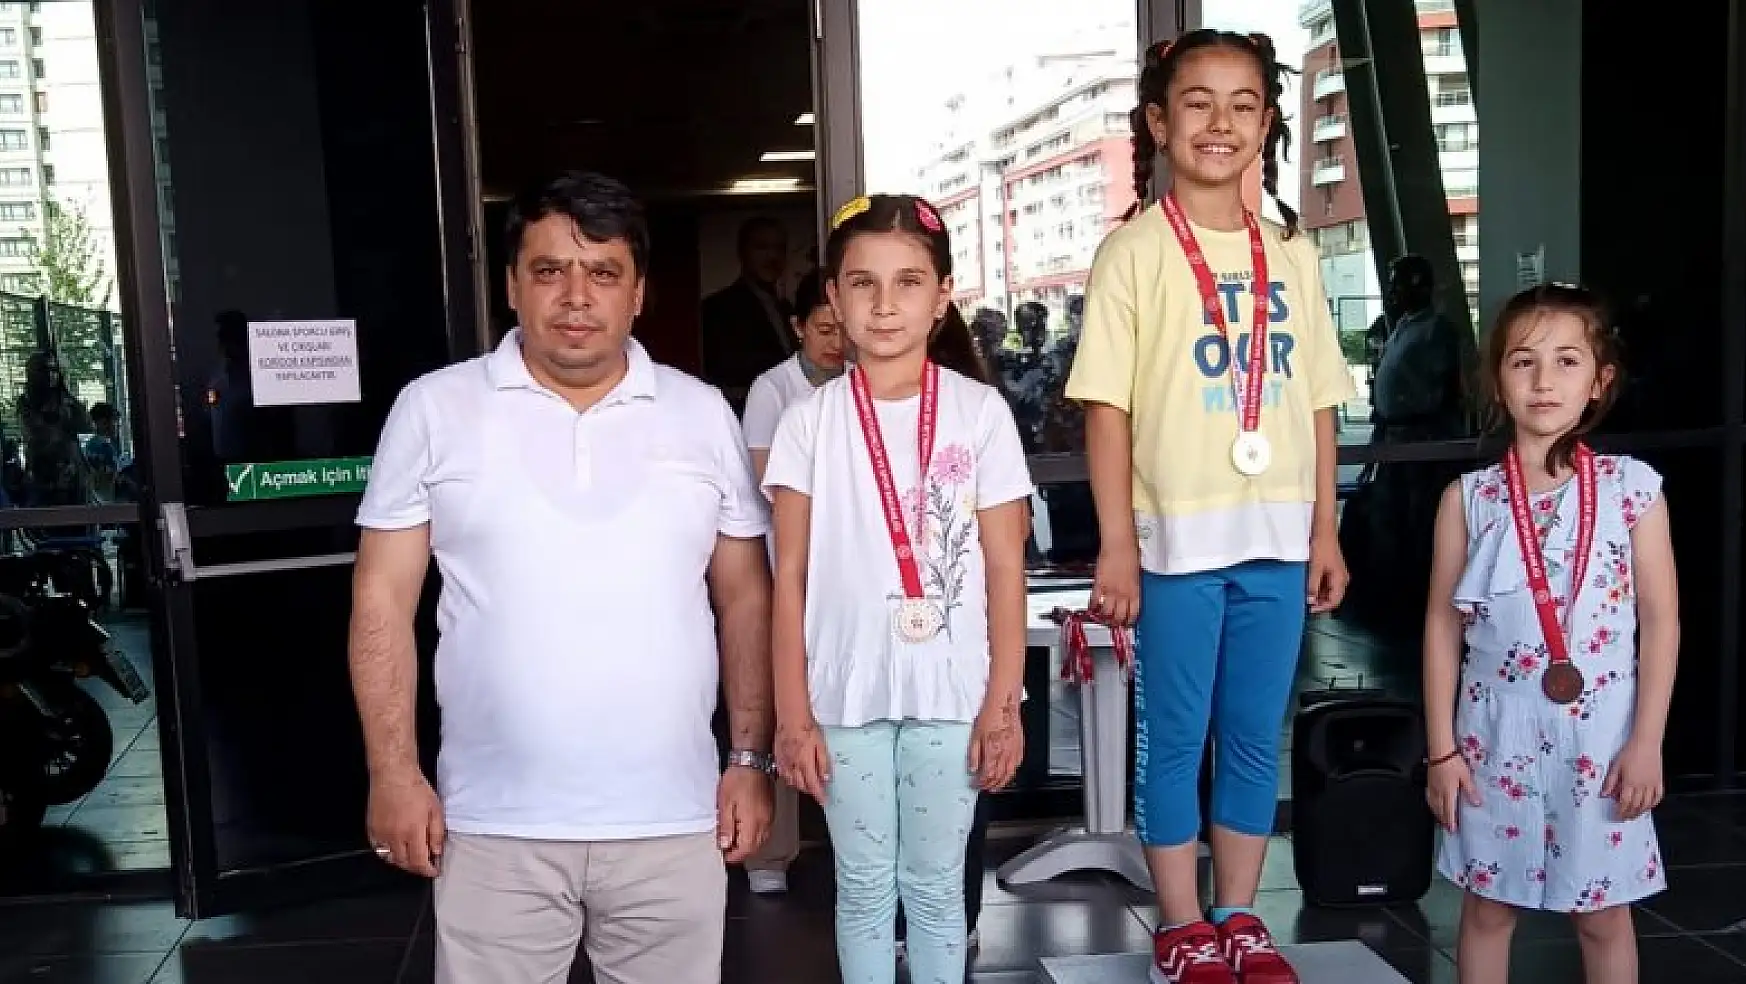 Karatay Belediyespor Kulübü Satranç Takımı sporcuları başarılarıyla sevindirdi